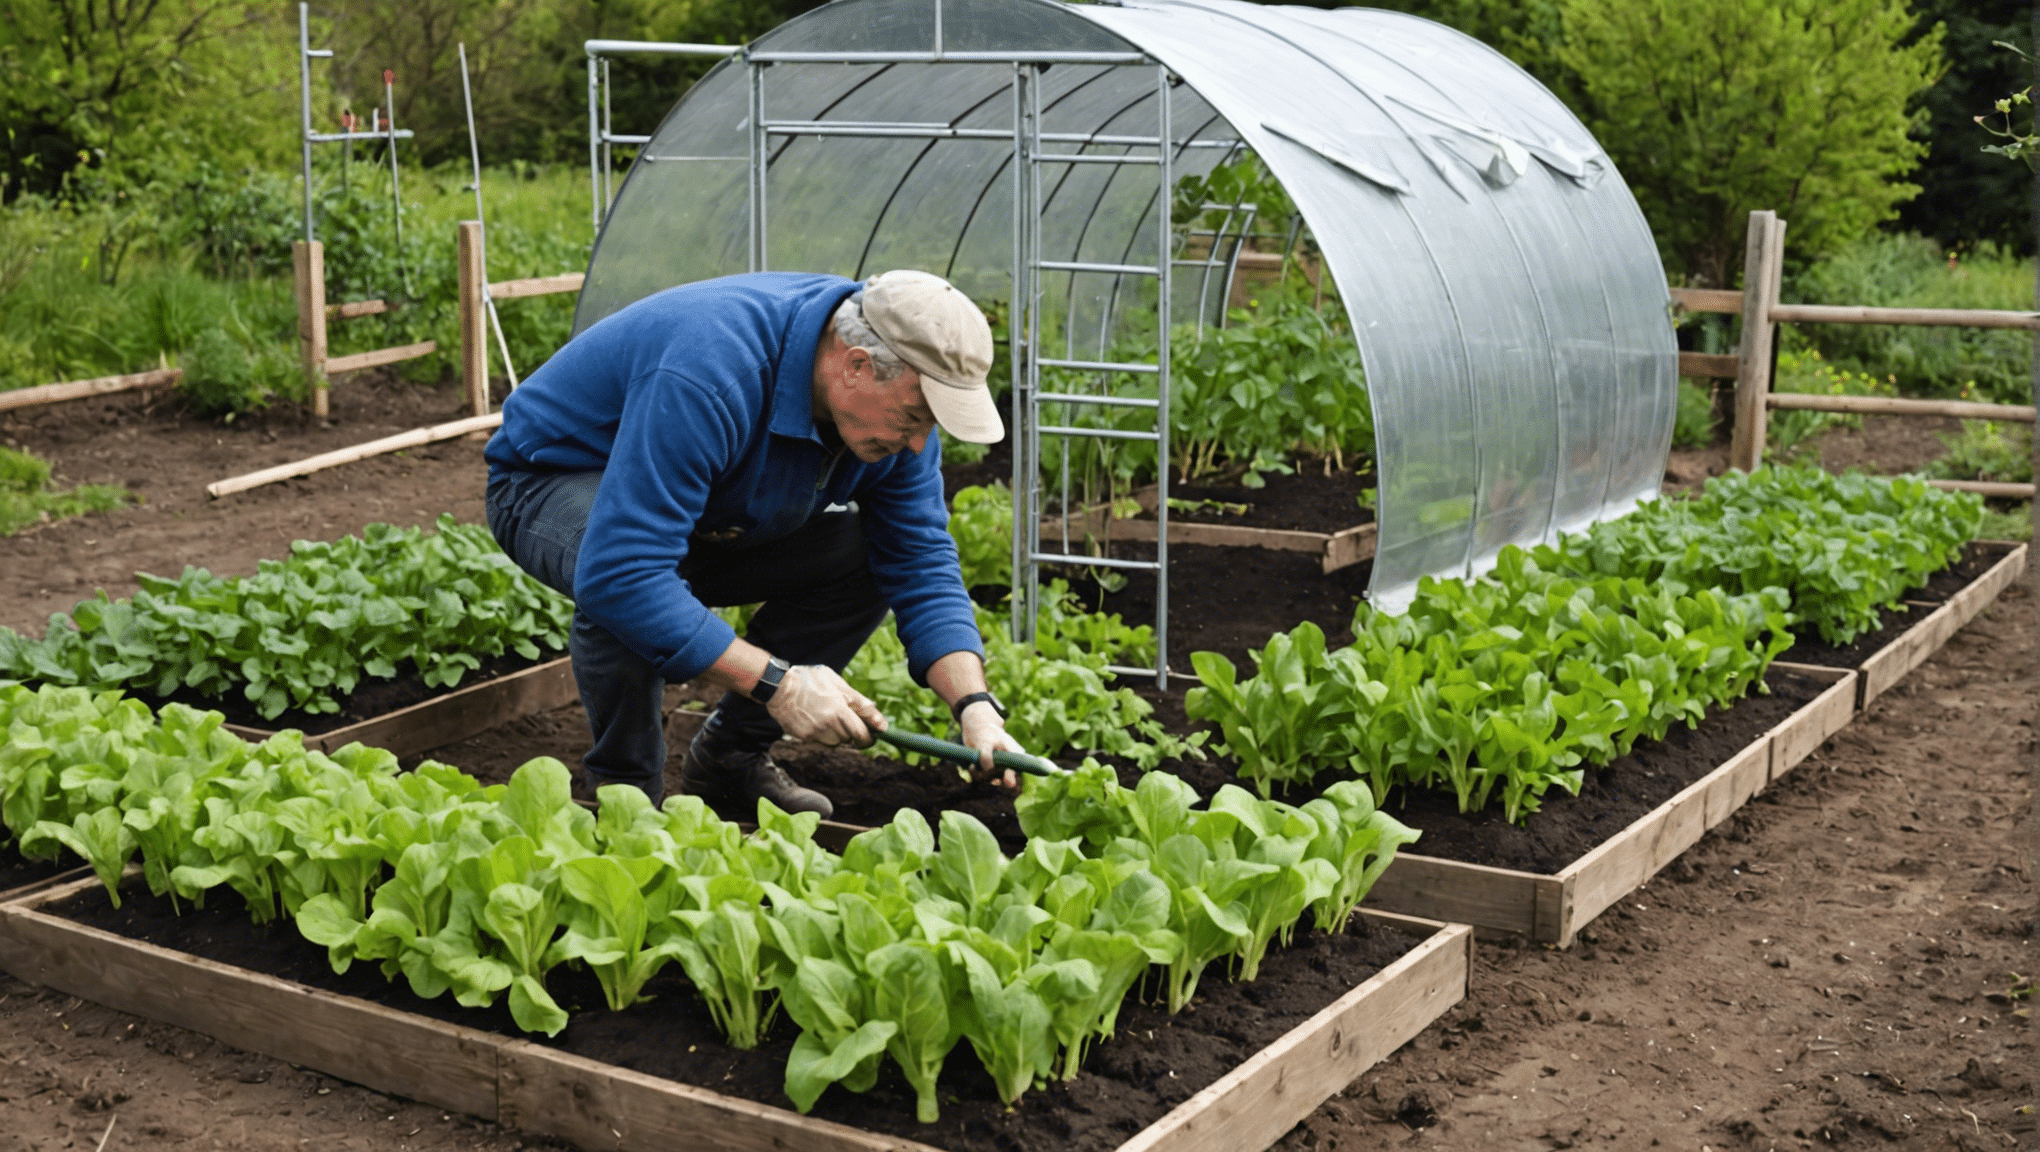 découvrez comment arroser votre potager en avril pour obtenir des légumes éclatants de santé grâce à nos conseils pratiques de jardinage.